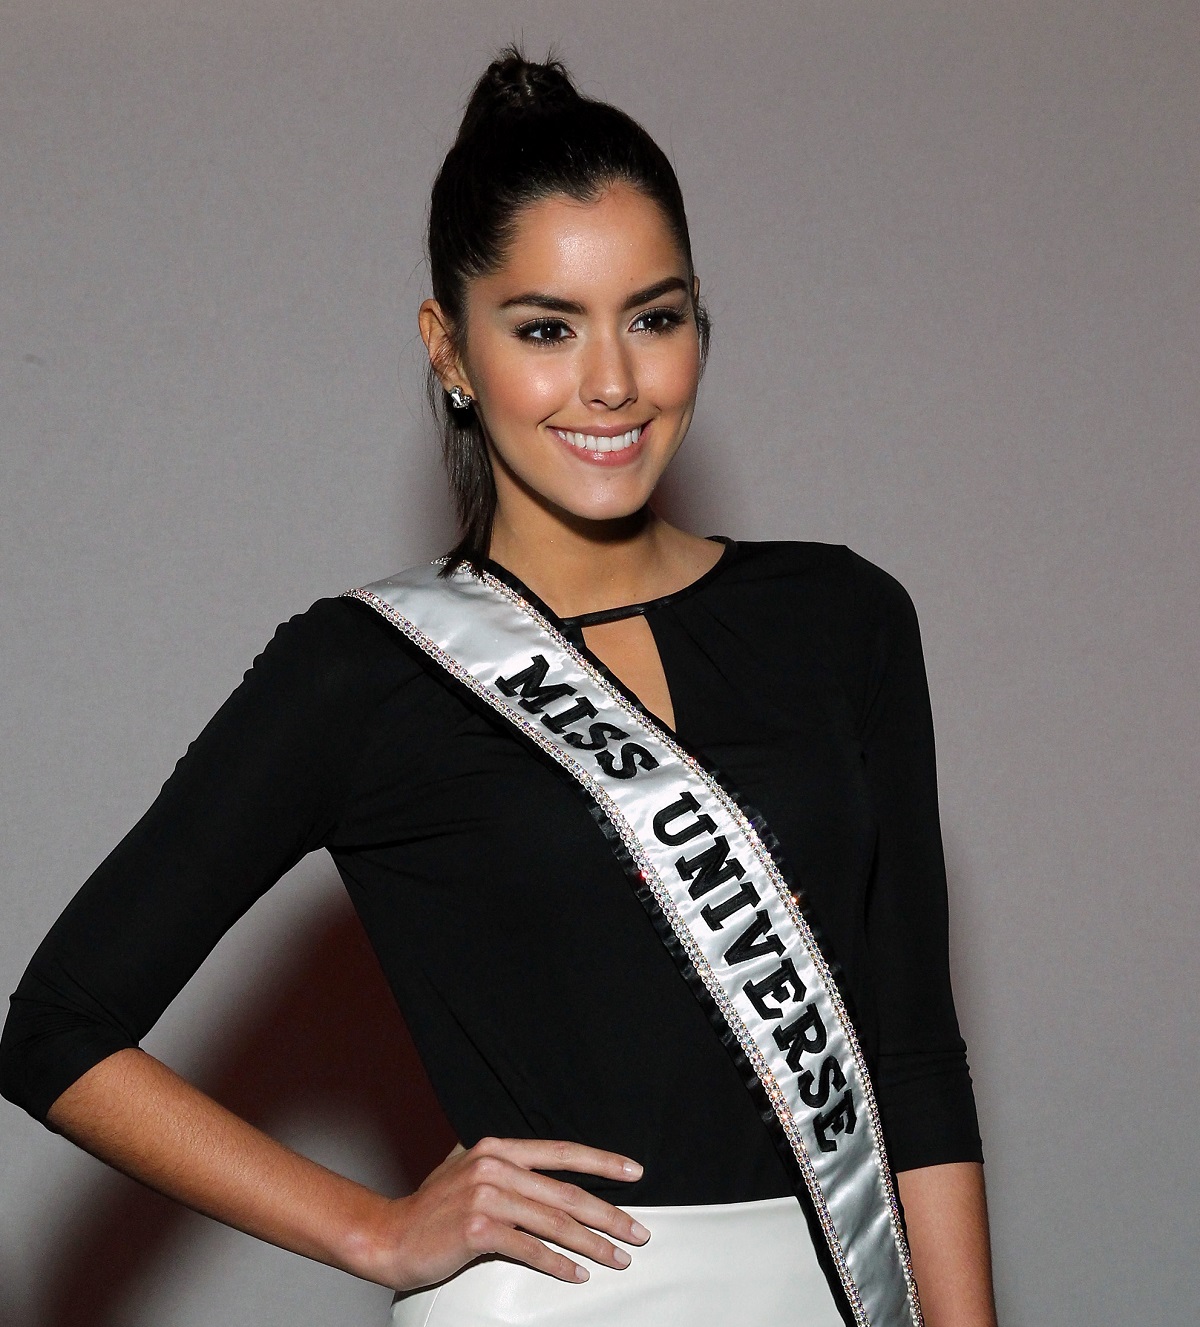 Paulina Vega, en nota sobre qué fue lo malo de ser Miss Universo